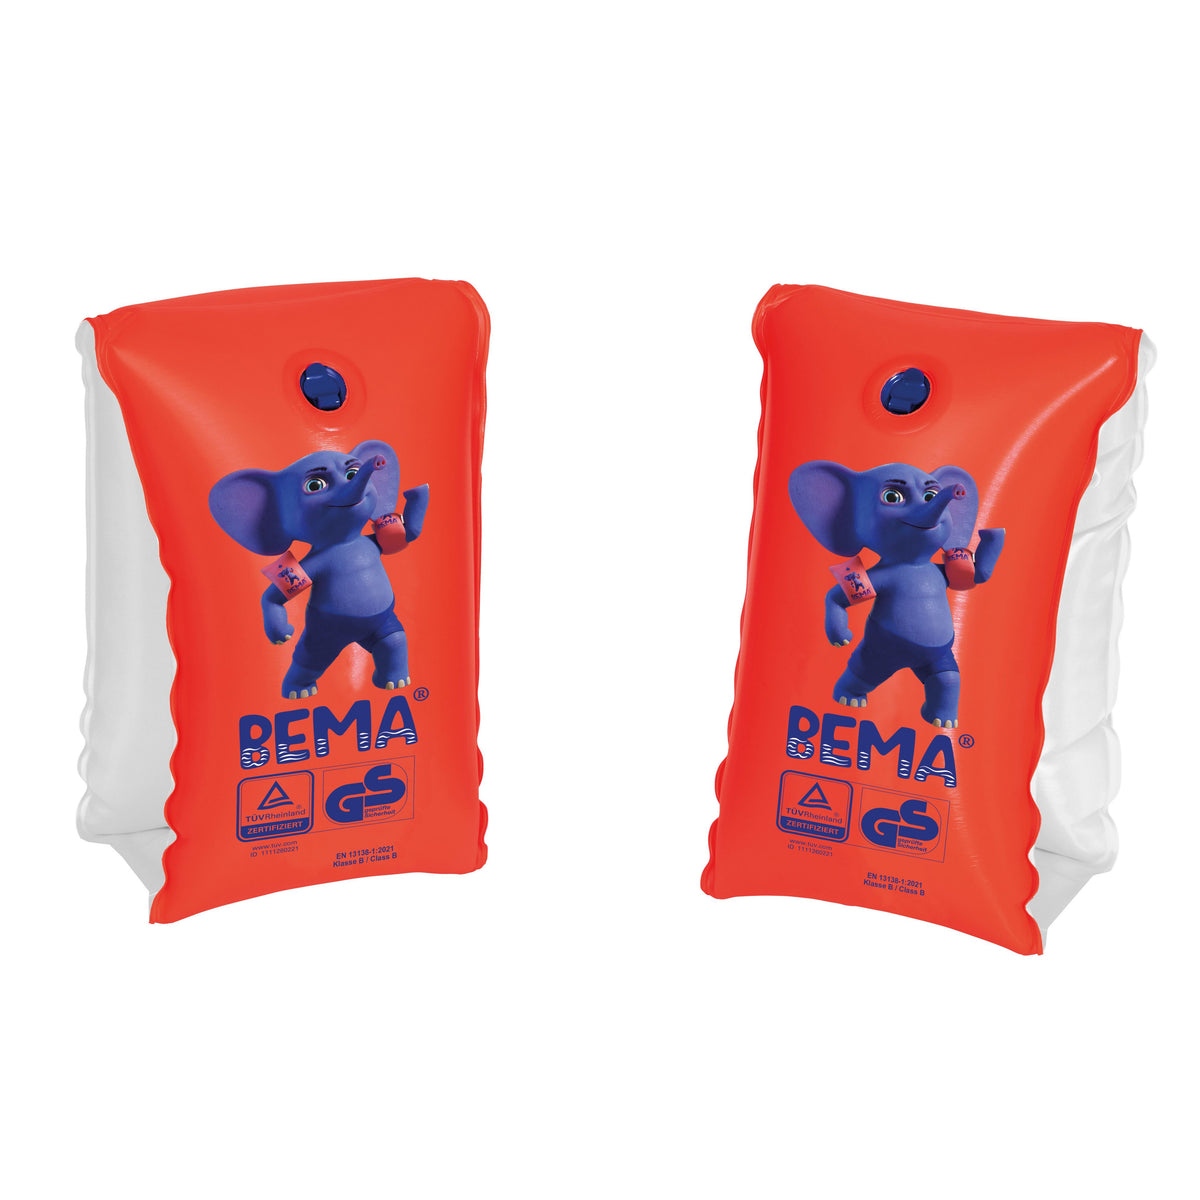 Happy People BEMA® Schwimmflügel für Kinder von 1-6 Jahren, orange, Gr. 0